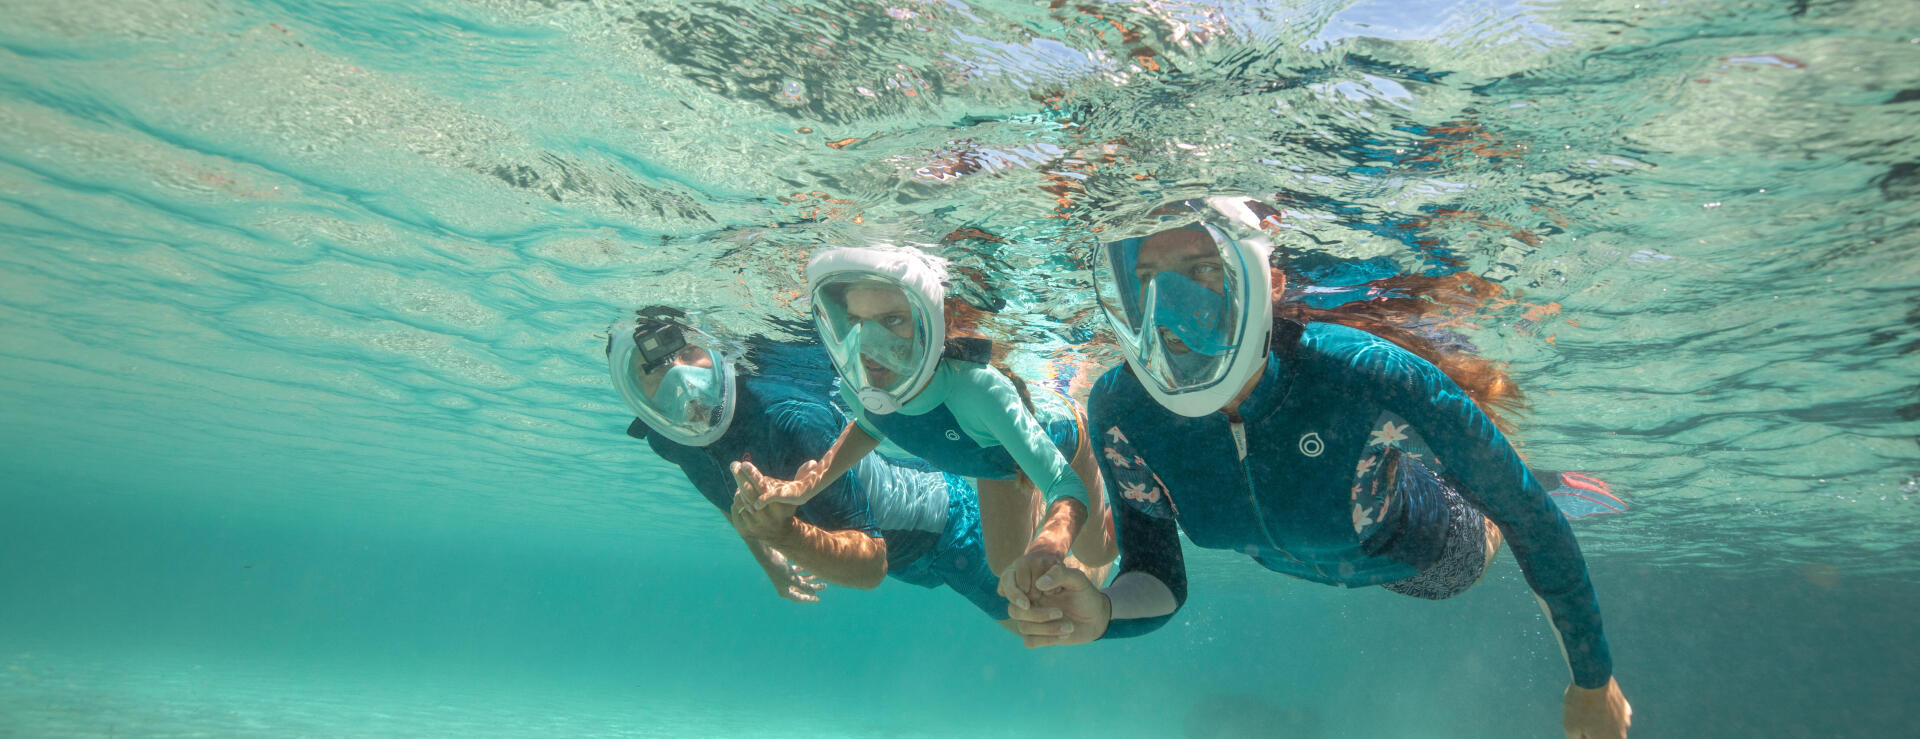 Como escolher o tamanho da máscara de snorkeling Easybreath? 